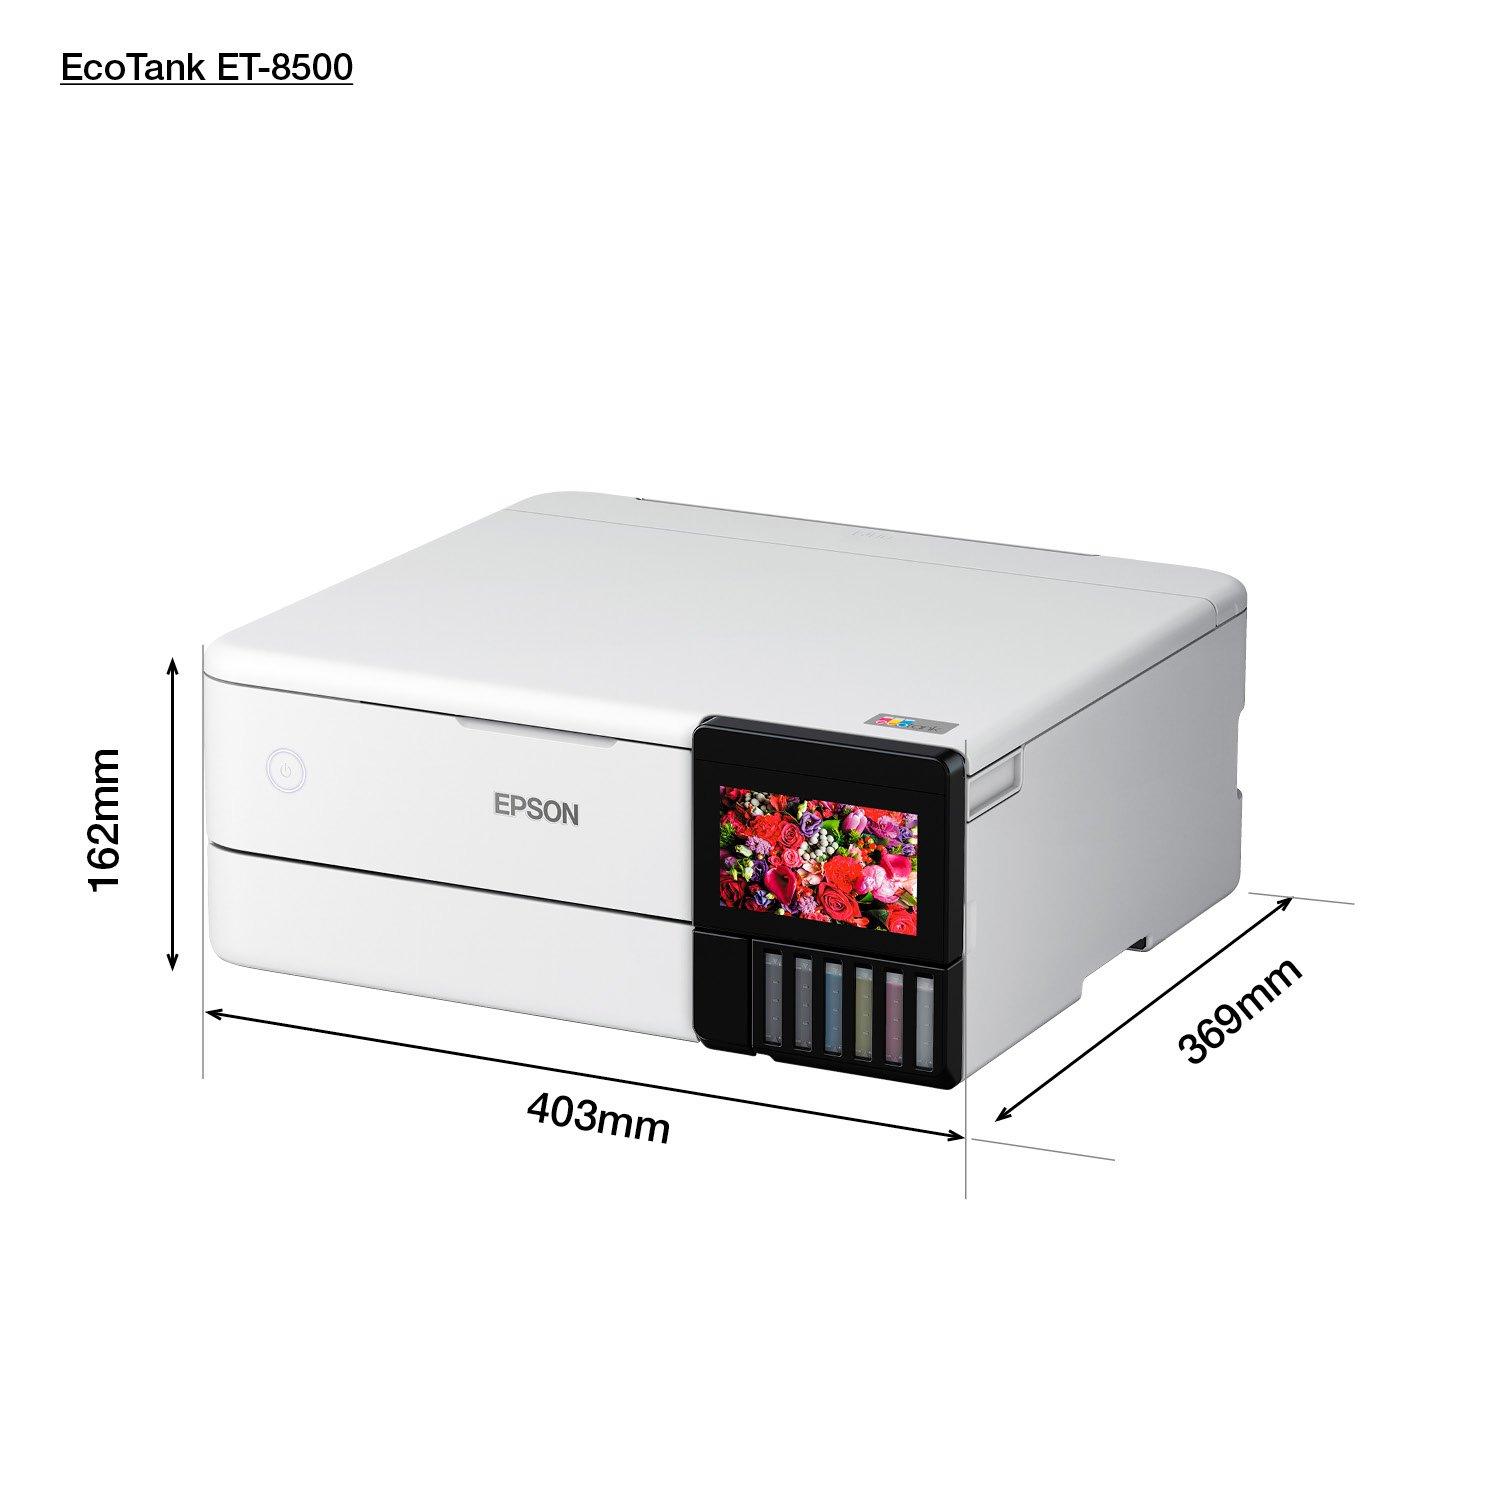 Epson EcoTank ET-8500 and ET-8550 Now In Stock - Printerbase News Blog